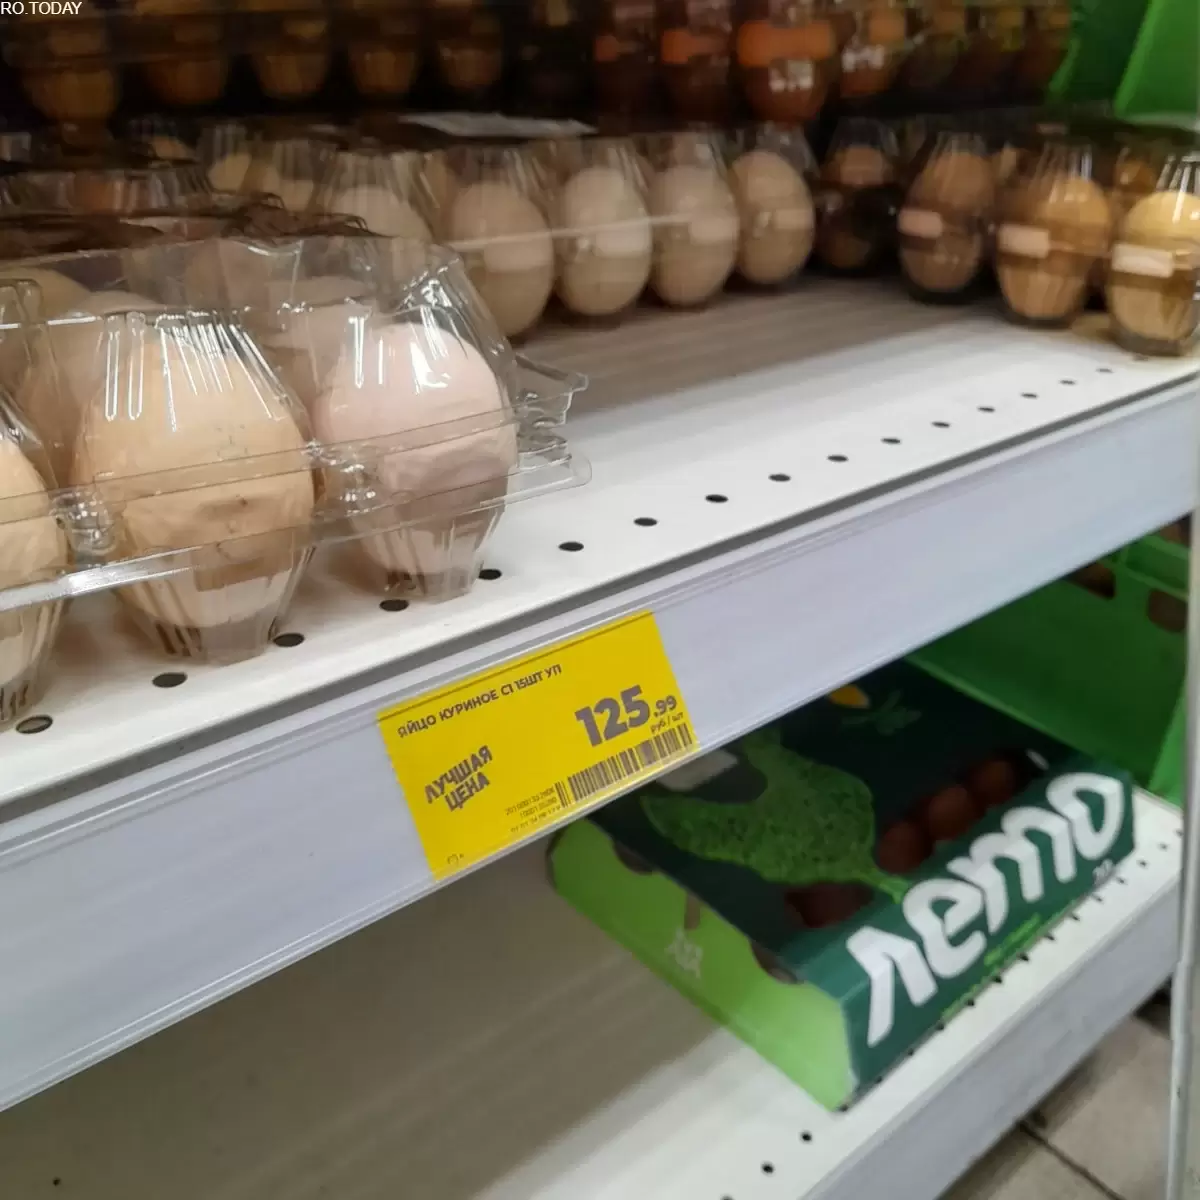 В Ростовской области сразу после новогодних праздников упали цены на яйца